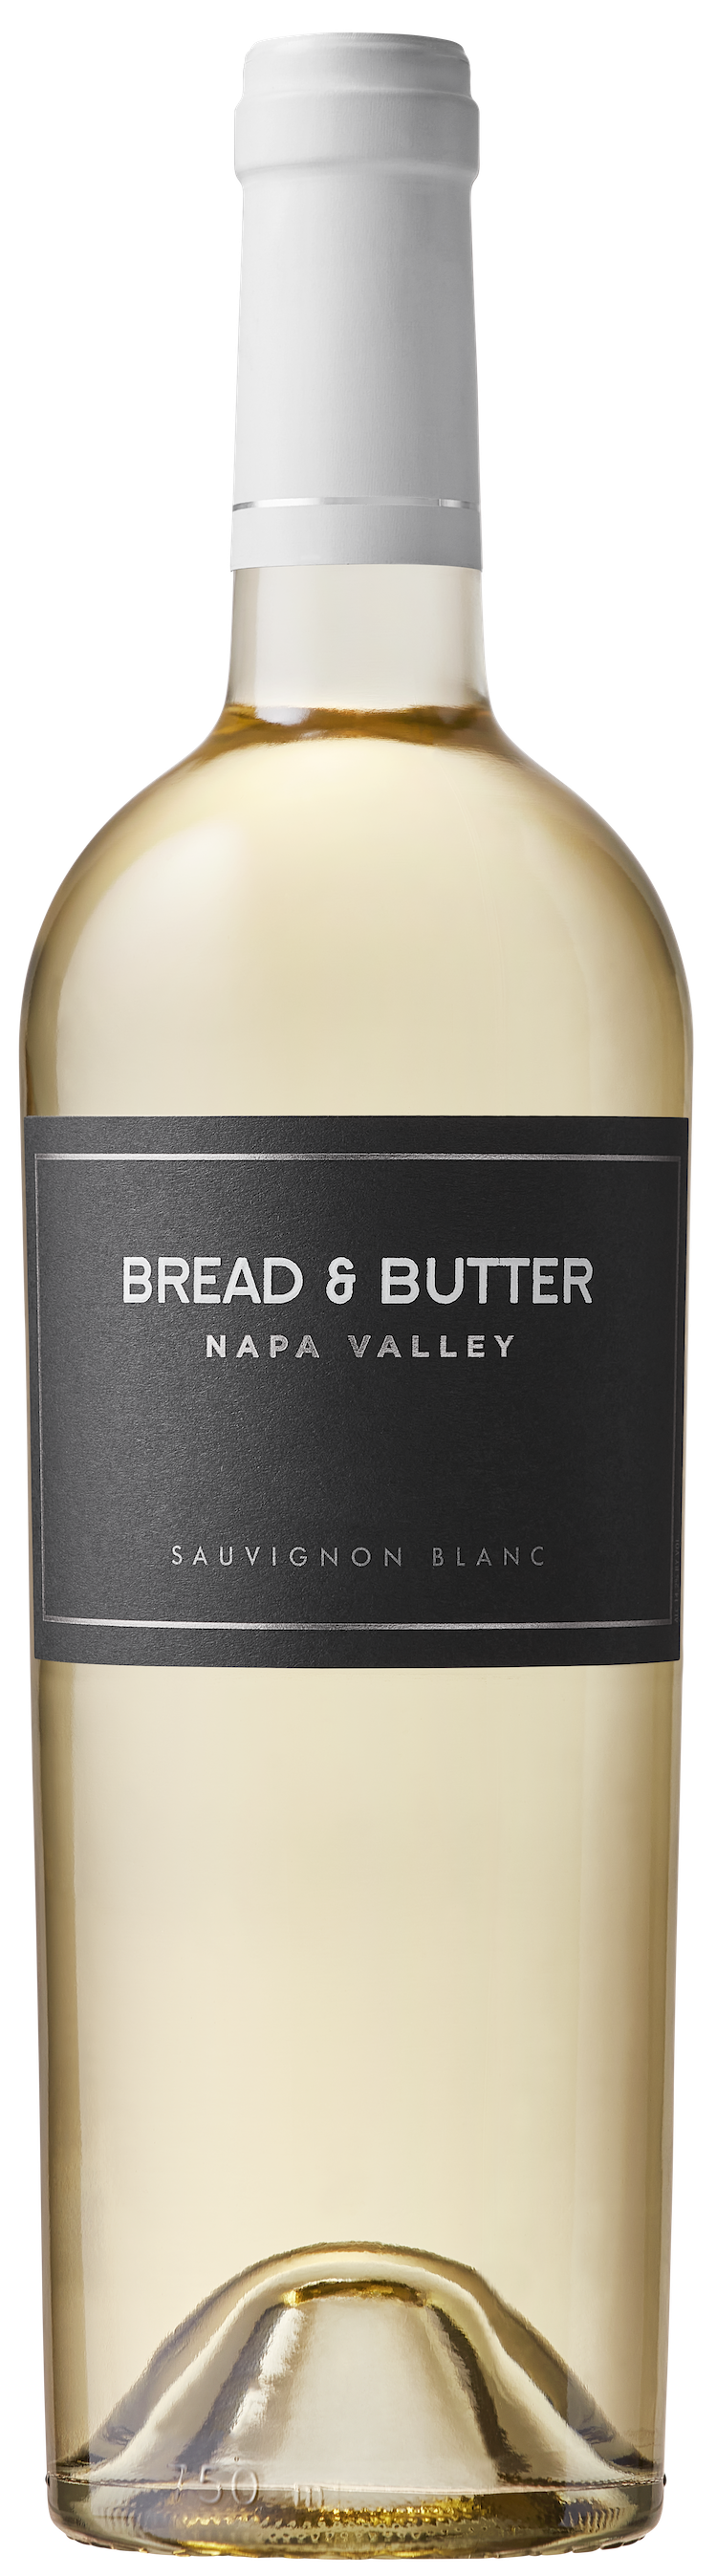 Bread & Butter Napa Valley Sauvignon Blanc